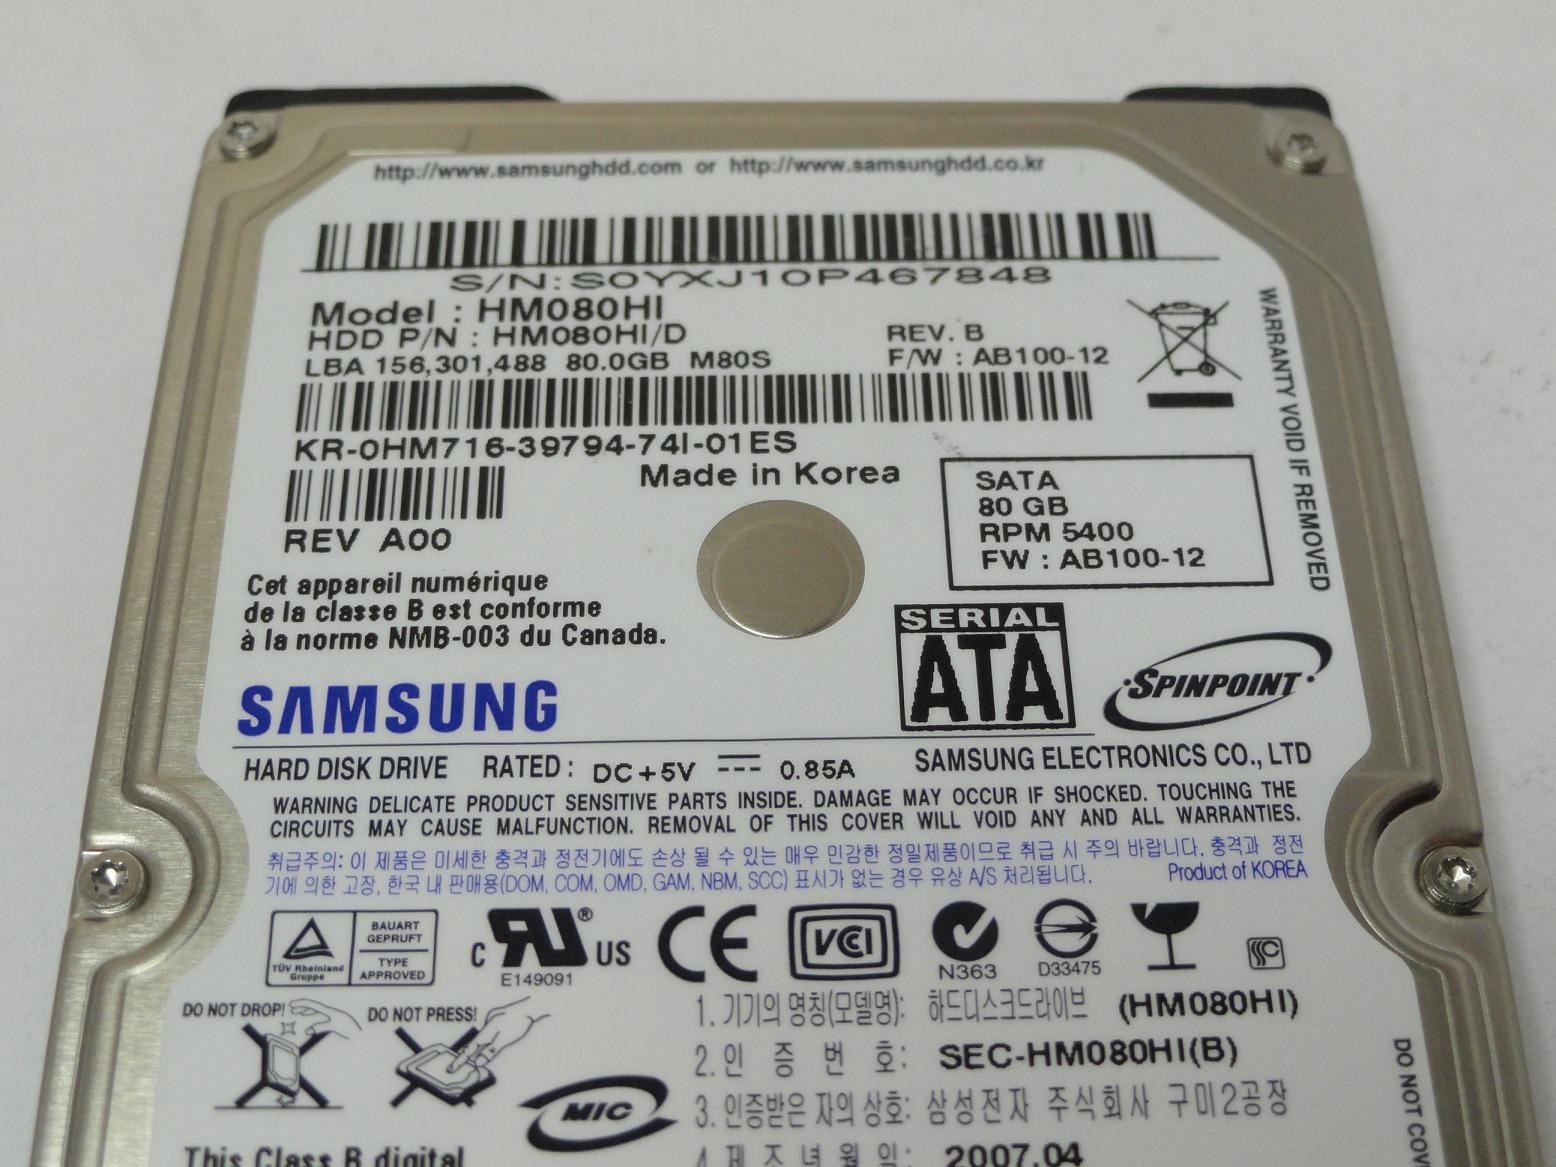 PR20158_HM080HI/D_Samsung Dell 80GB SATA 5400rpm 2.5in HDD - Image3